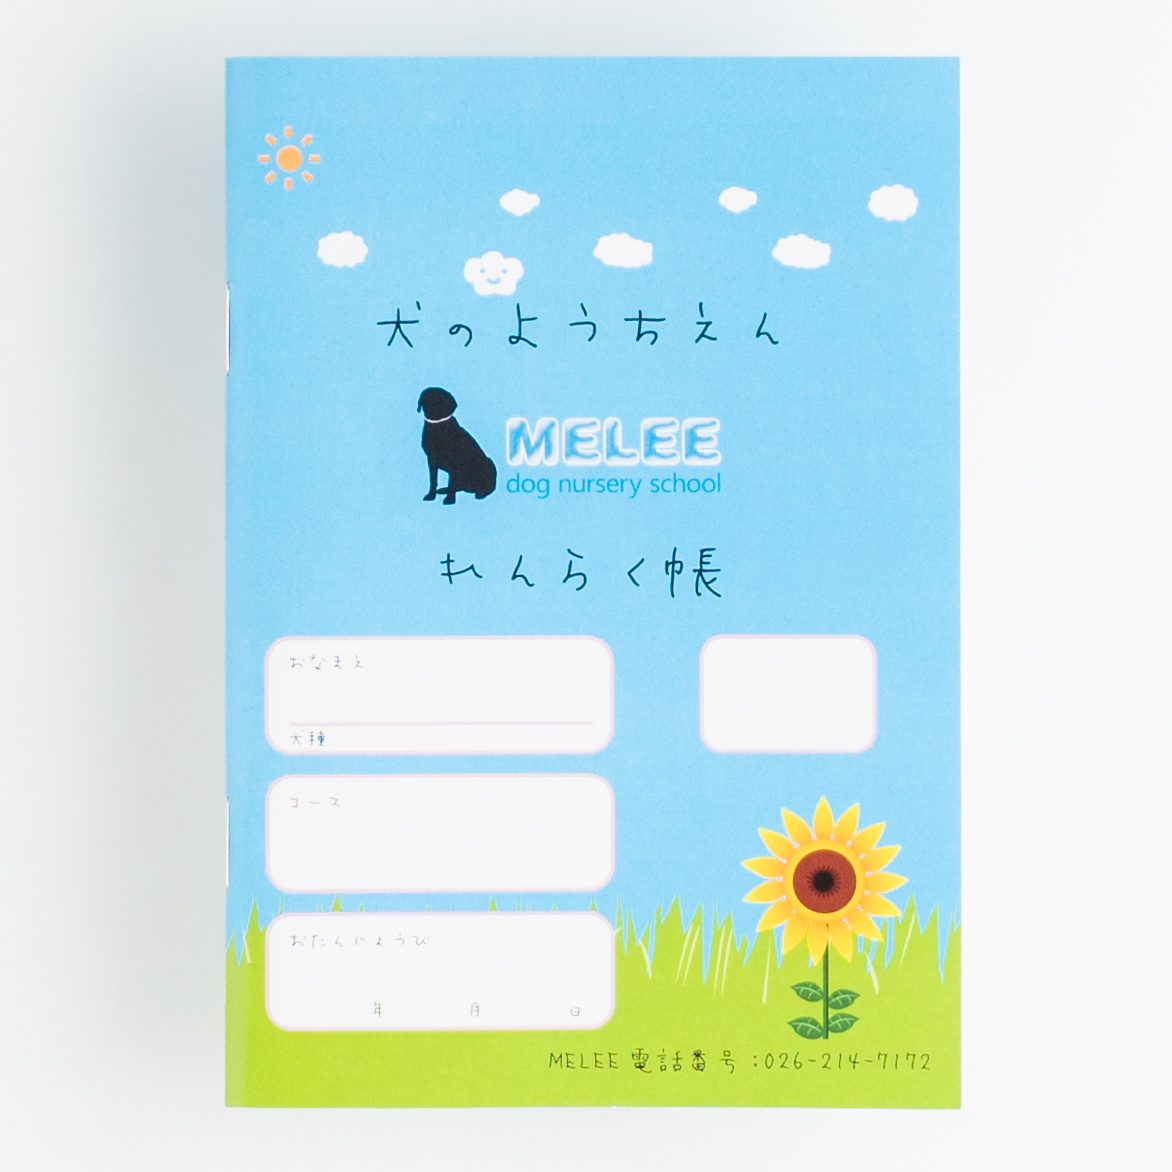 「犬の幼稚園ＭＥＬＥＥ 様」製作のオリジナルノート